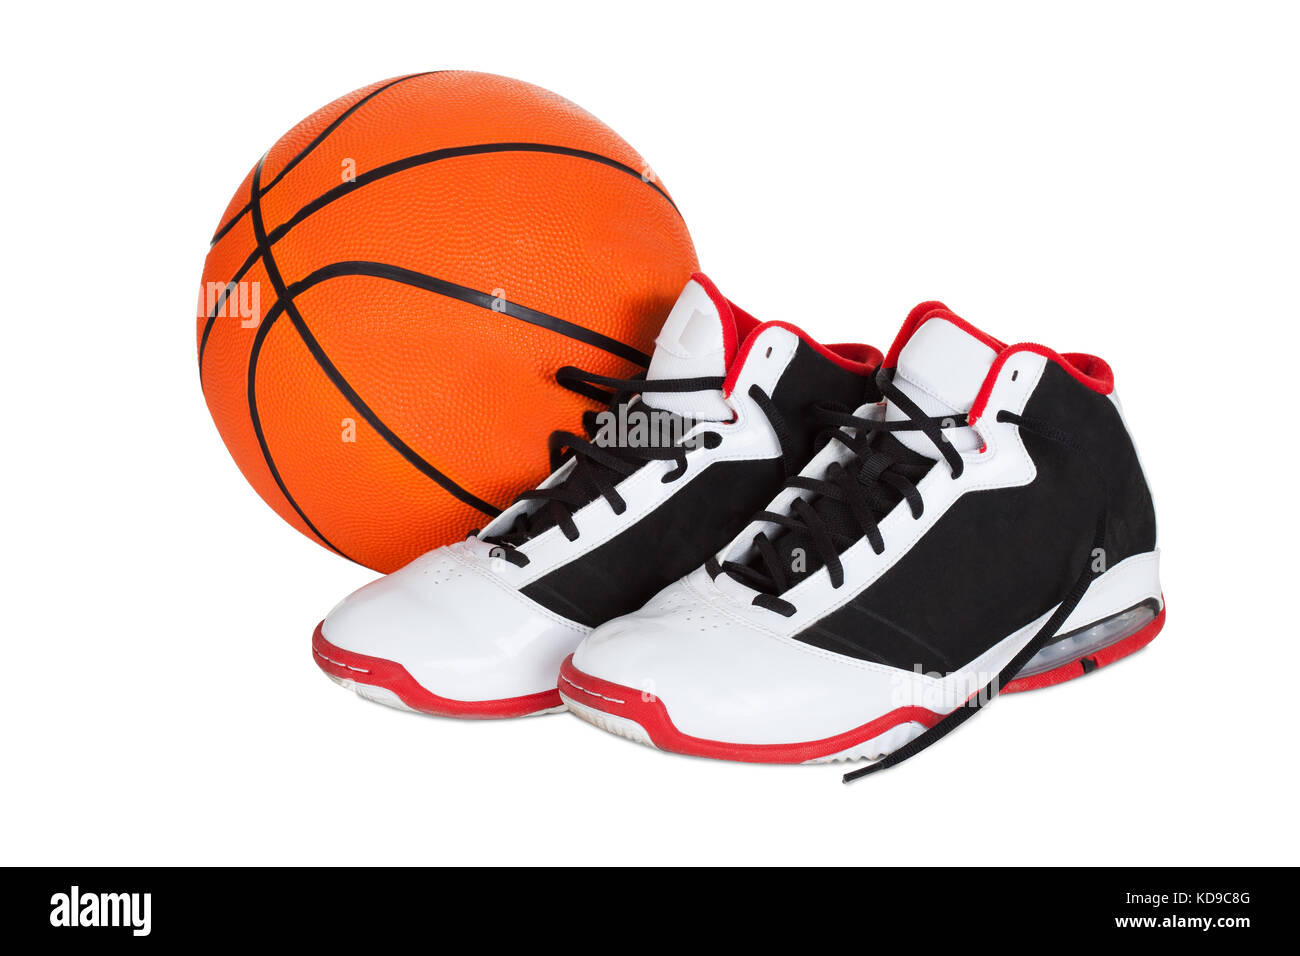 Chaussures de basket ball : 26 487 images, photos de stock, objets 3D et  images vectorielles